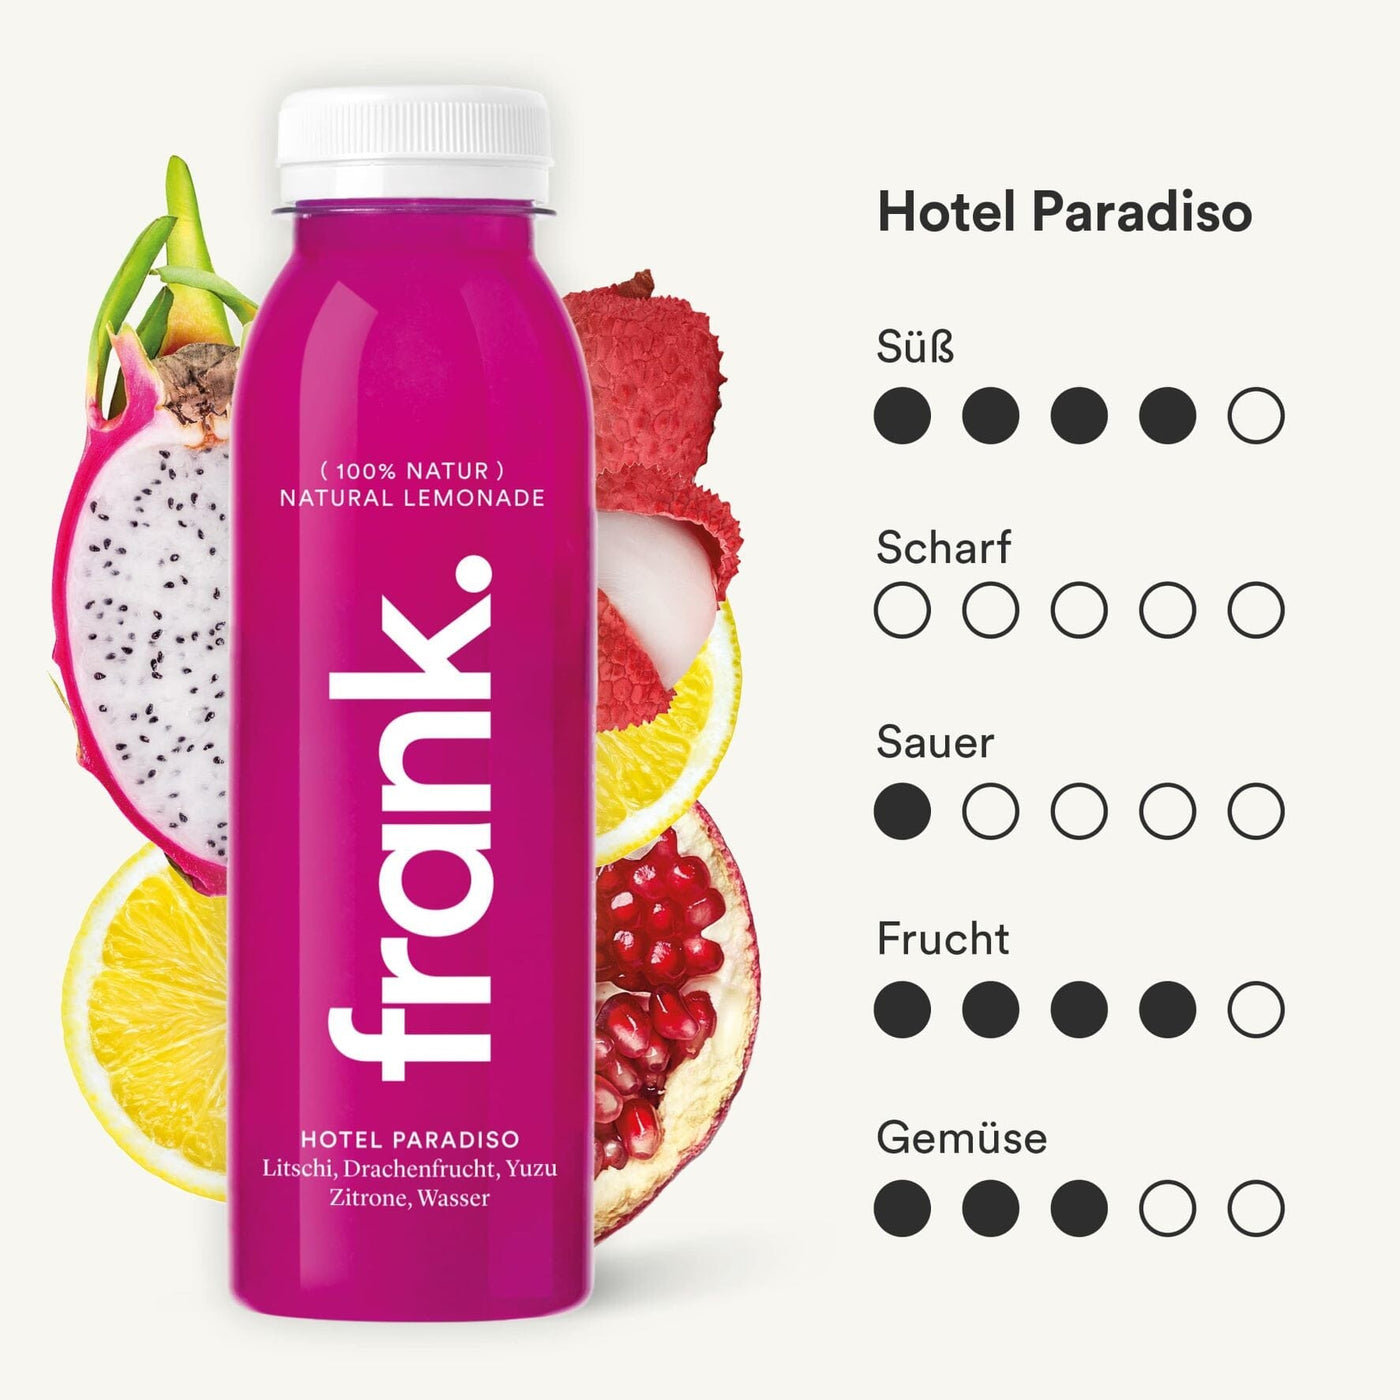 Darstellung des Geschmacksprofils des Juice Hotel Paradiso von frank.